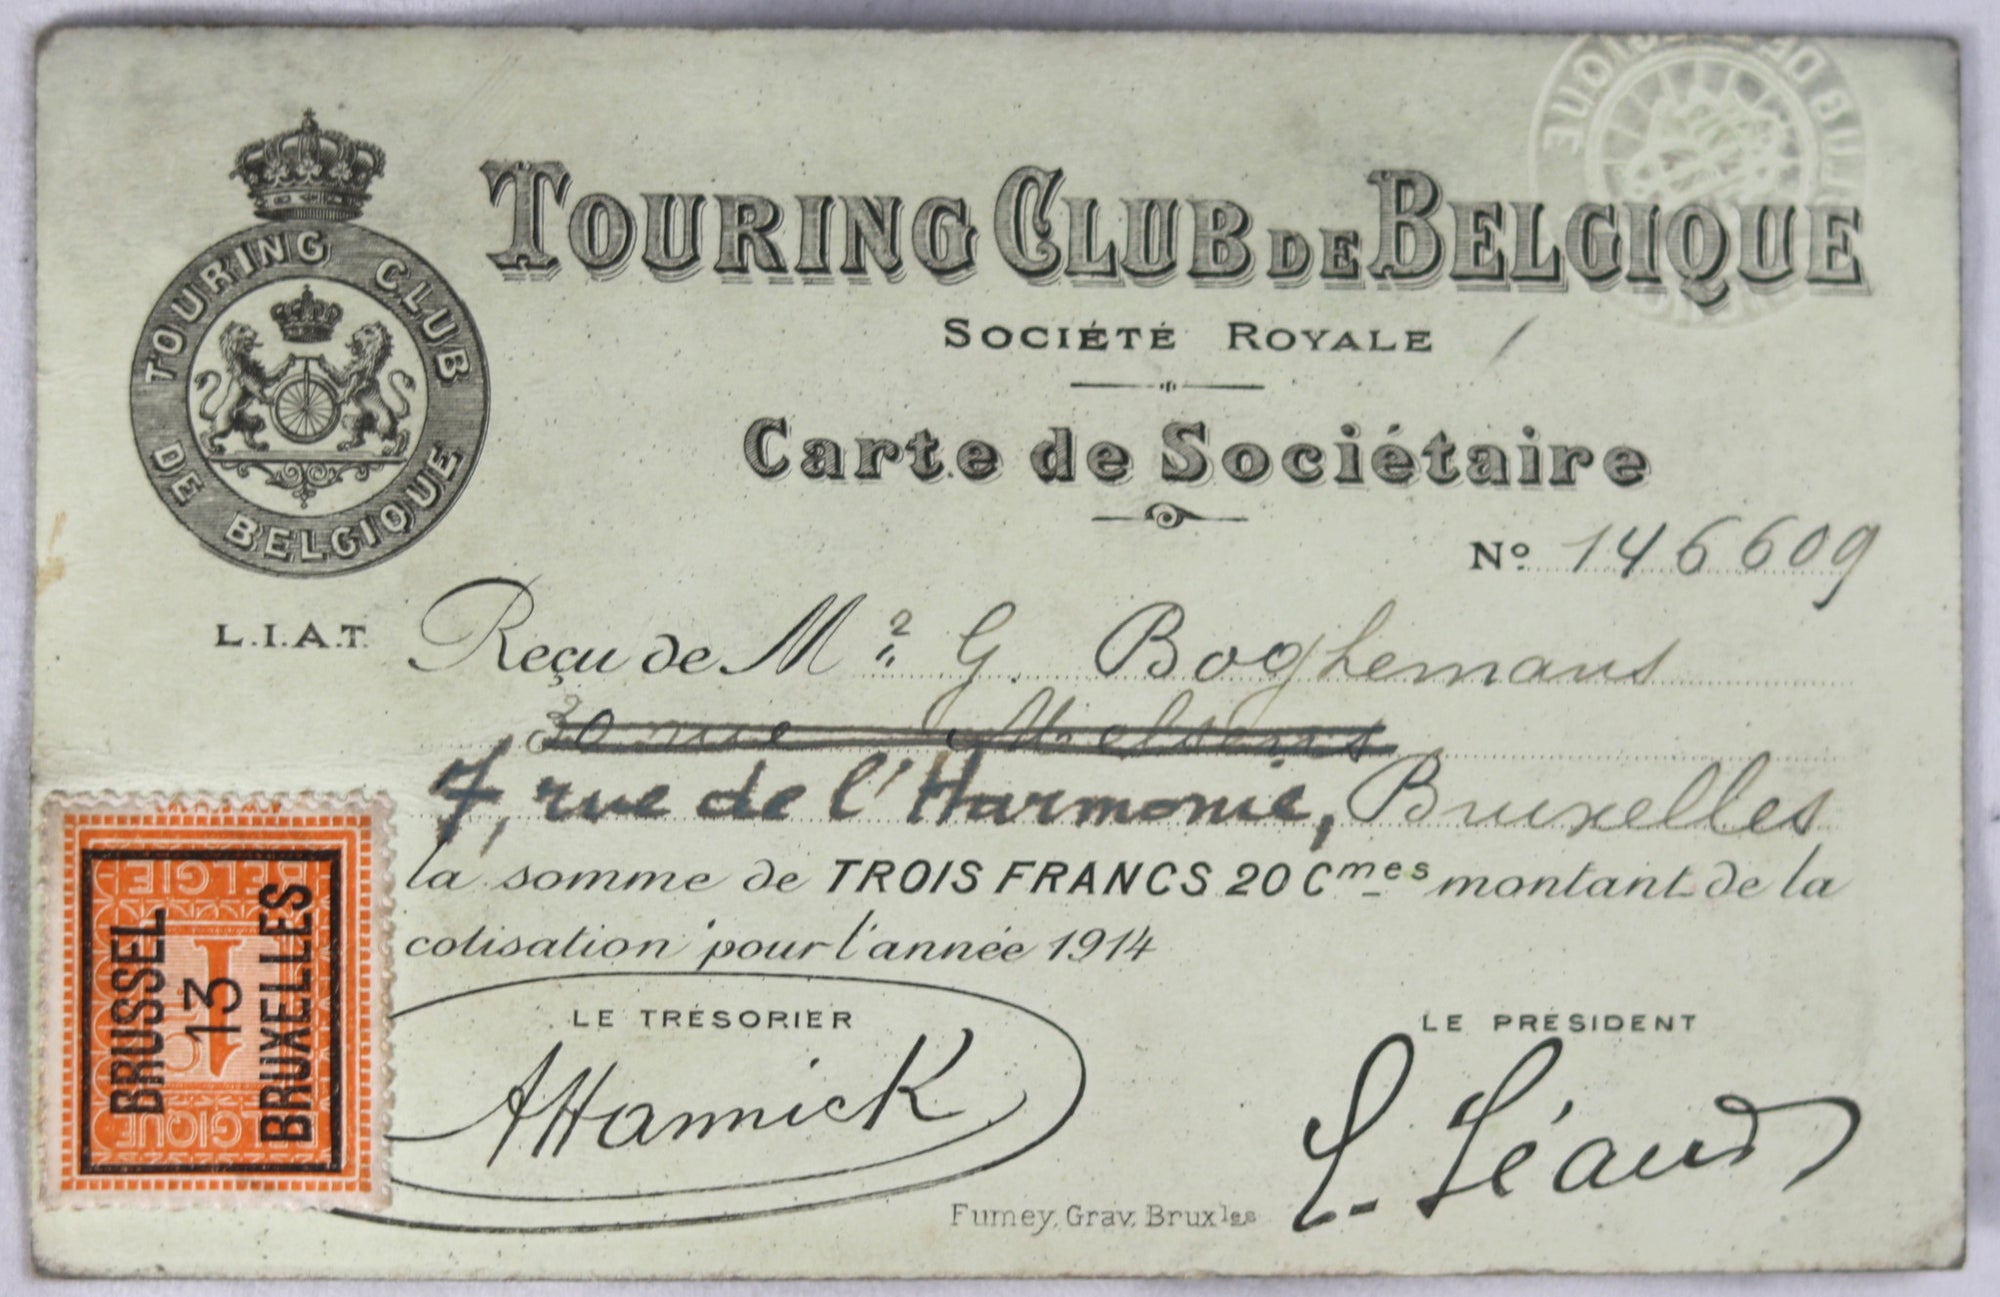 1914 Touring Club de Belgique, Carte de Societaire pour Boghemans